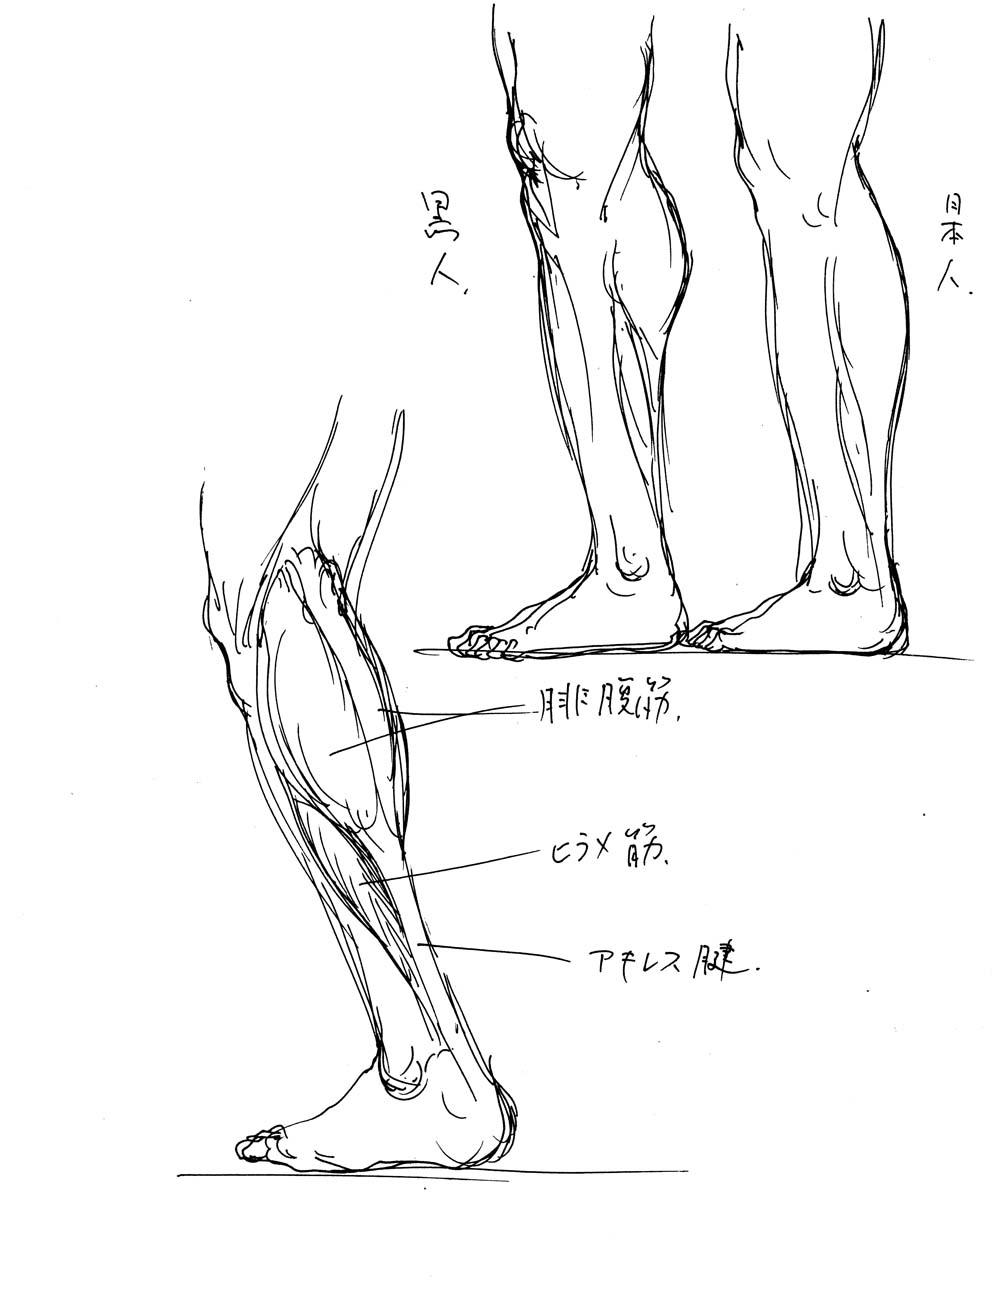 小田 隆 Oda Takashi ふくらはぎを構成する筋肉は腓腹筋とヒラメ筋 でアキレス腱を介して踵骨 かかと につながります 黒人などでは腓腹筋が短く 日本人などでは腓腹筋が長くなる傾向がありますが 個人差も大きいと思います Http T Co Dbdeervqja